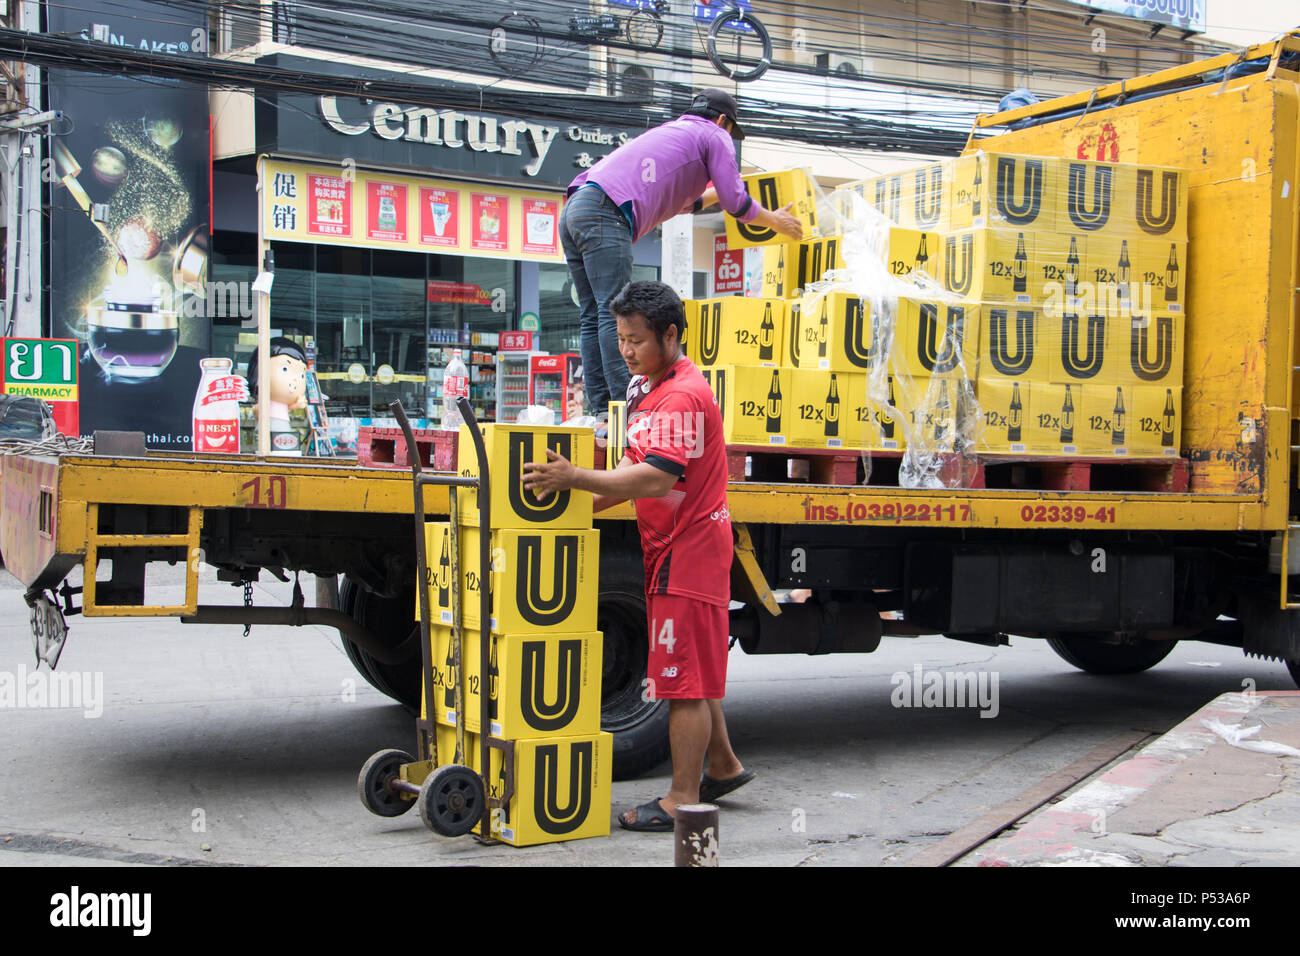 PATTAYA, THAÏLANDE, Apr 29 2018, des camions de livraison de bière dans la rue, Pattaya Banque D'Images